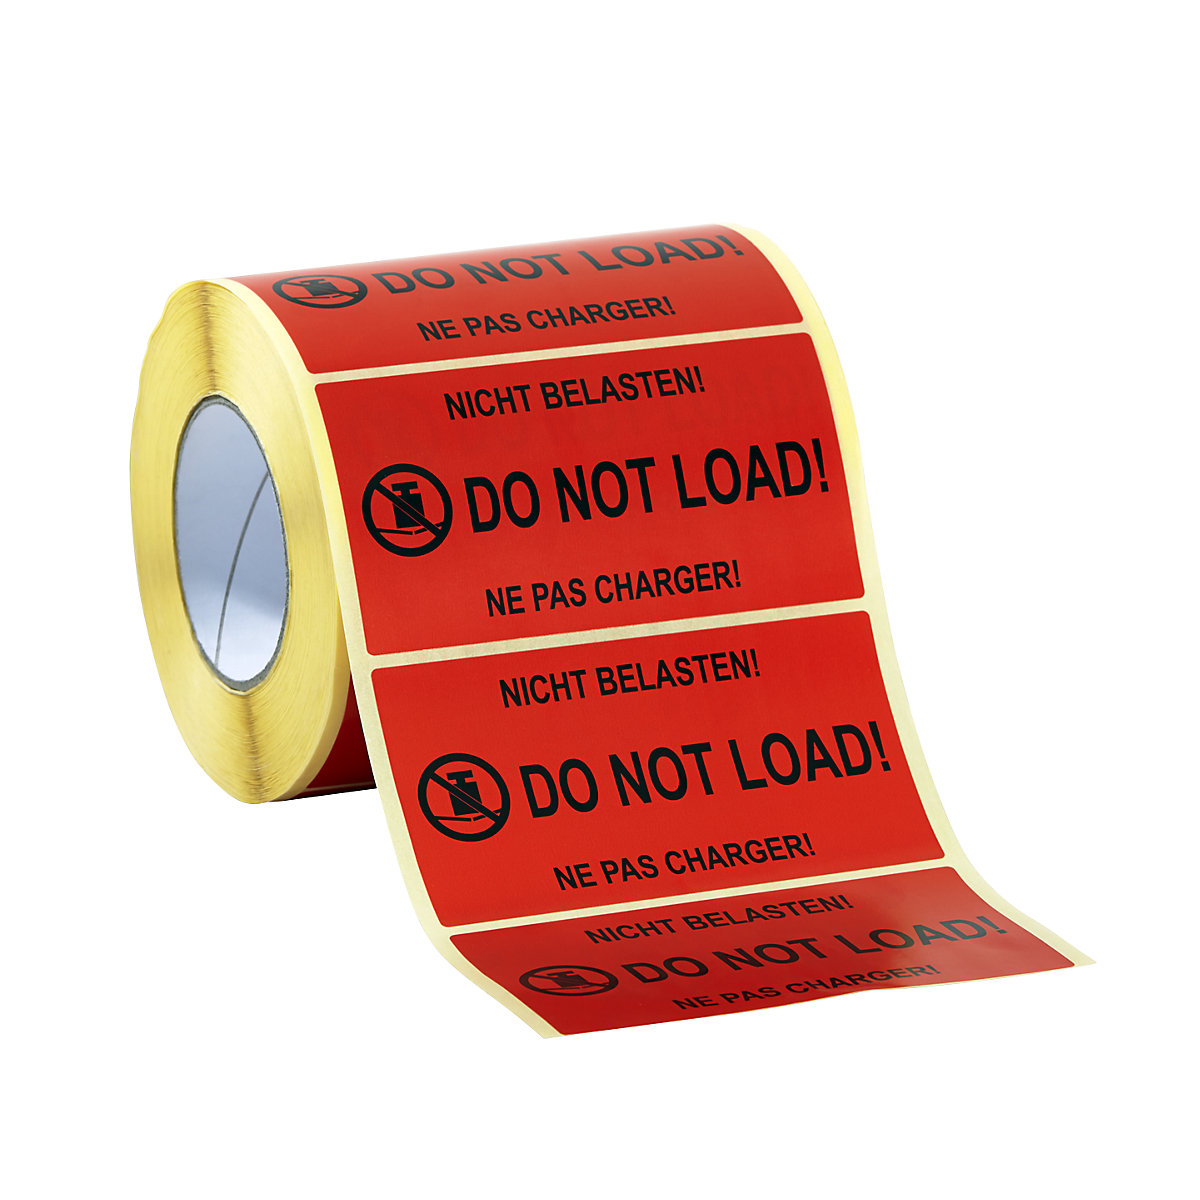 Upozoravajuće etikete, 1000 komada u roli, pak. 3 role, natpis »Do not load!«-5